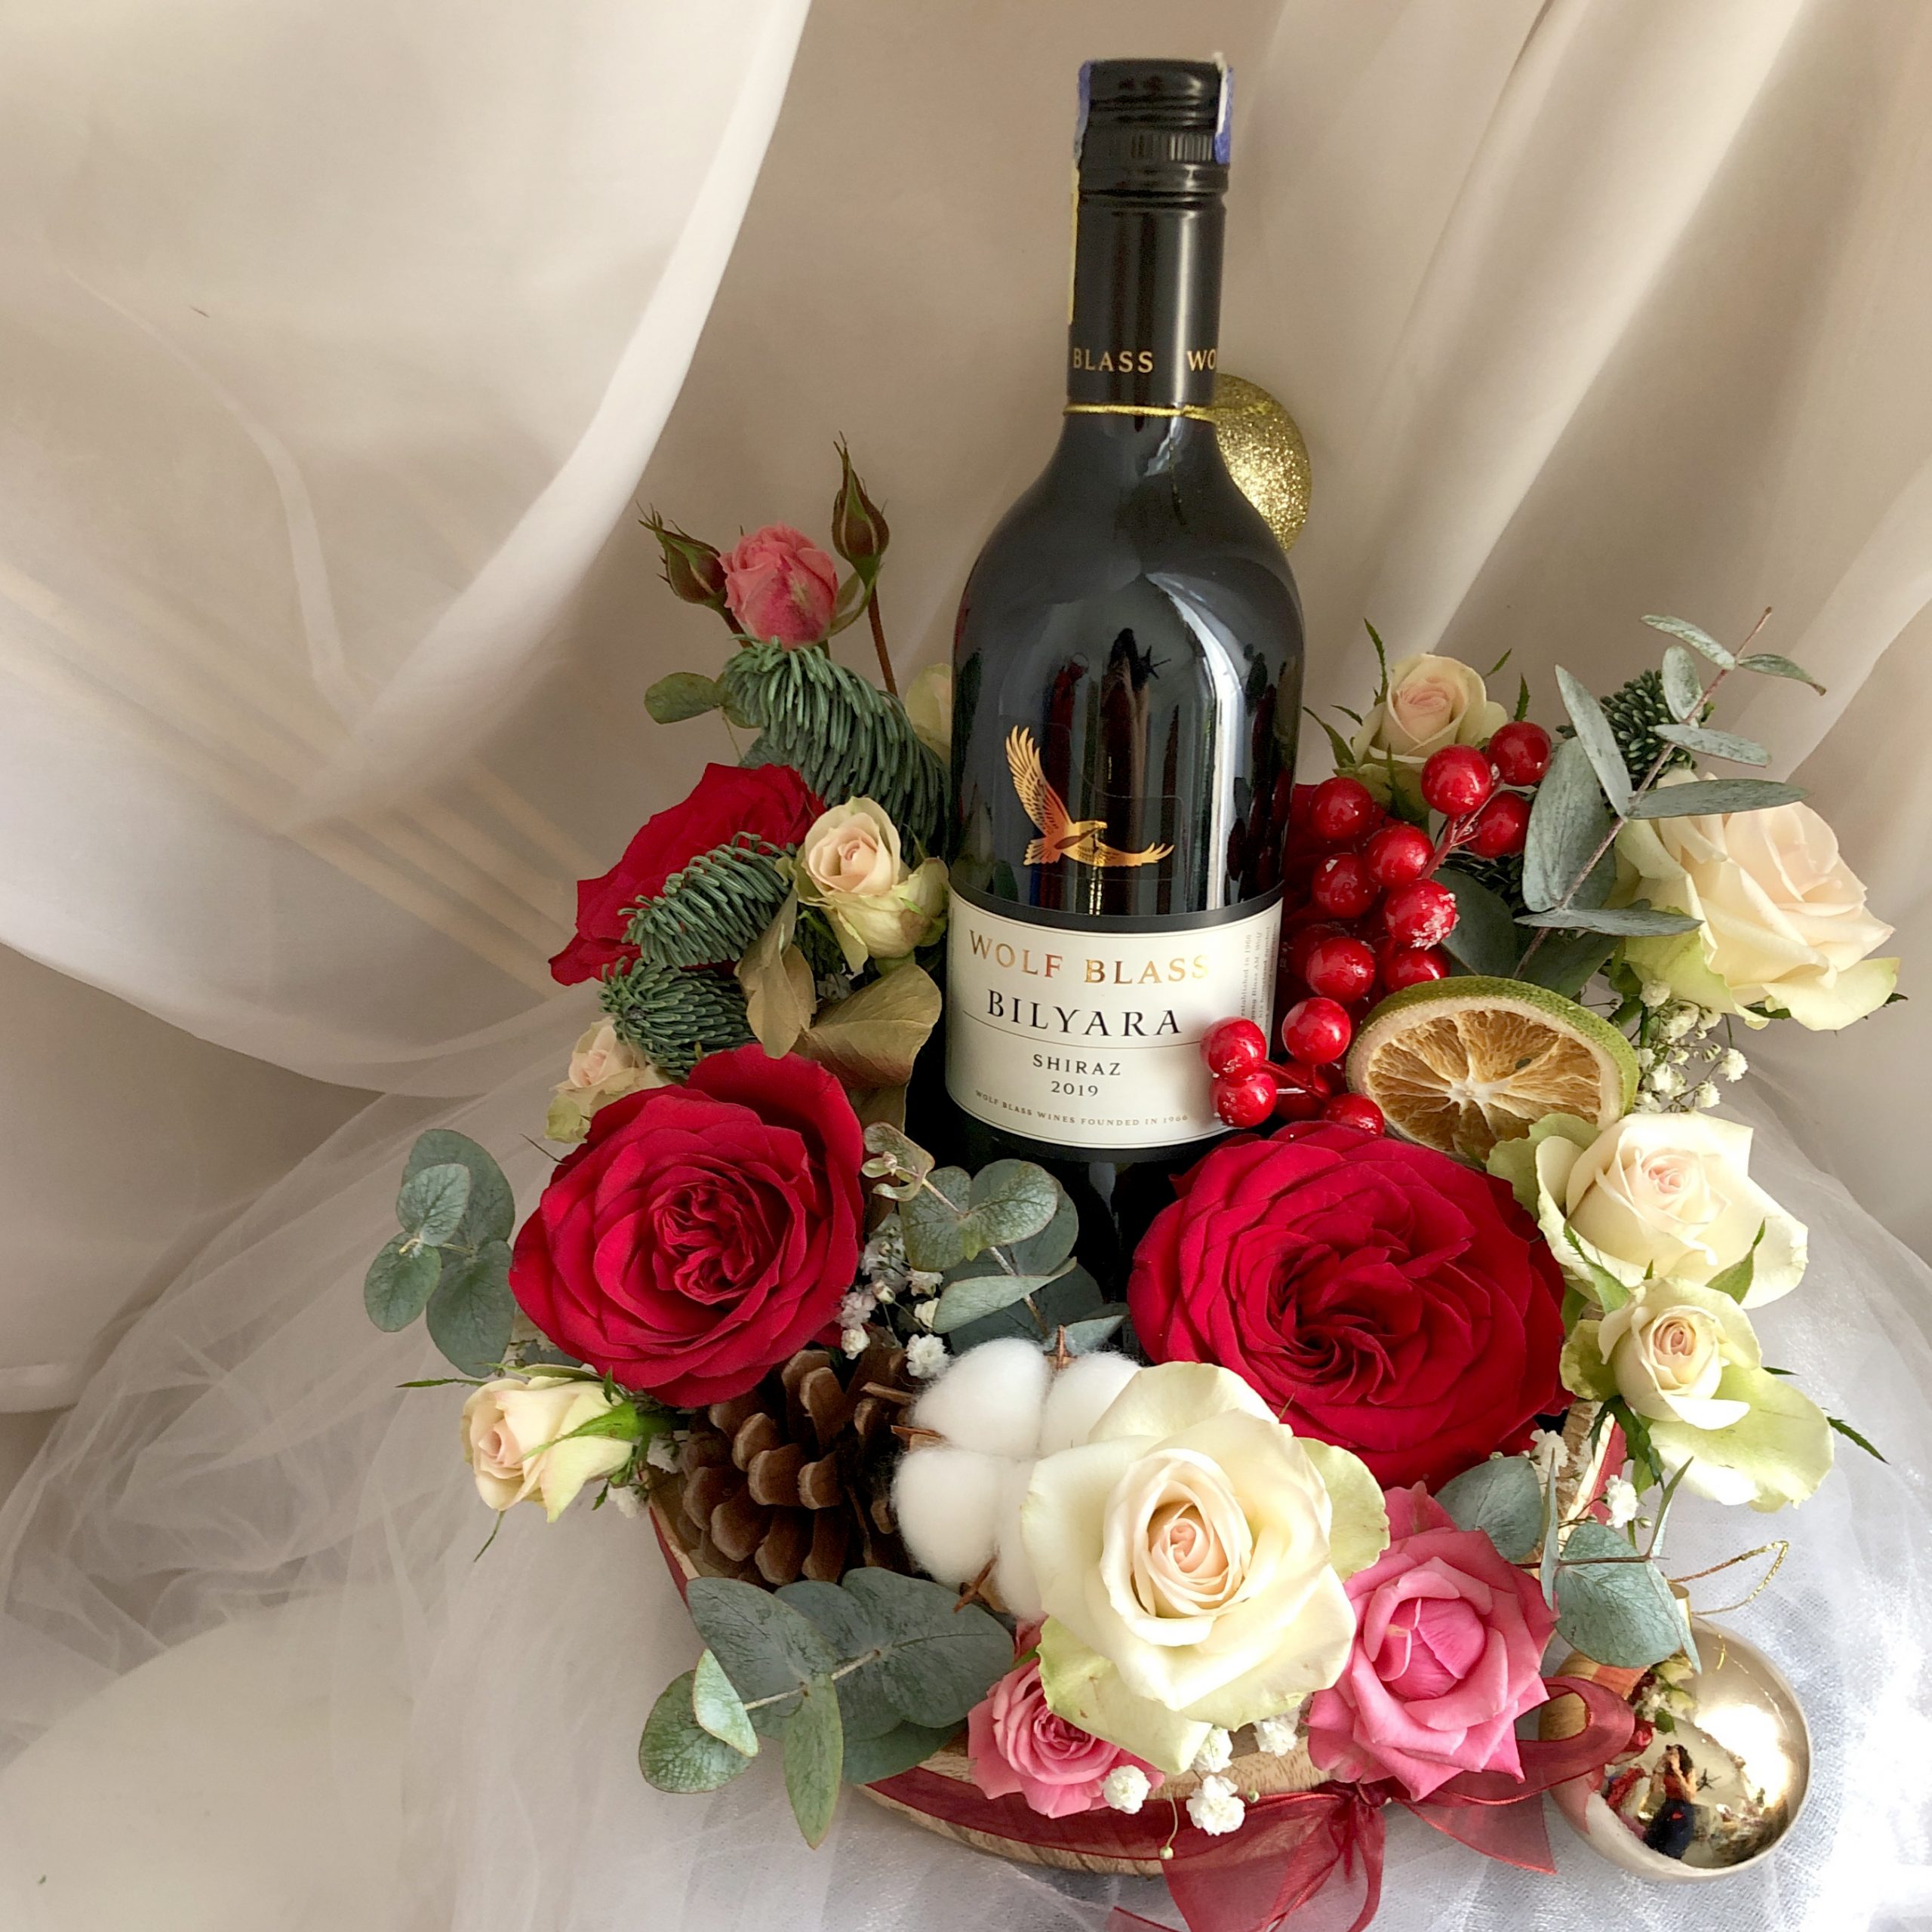 Rượu nho Úc Bilyara cùng giỏ hoa sặc sỡ